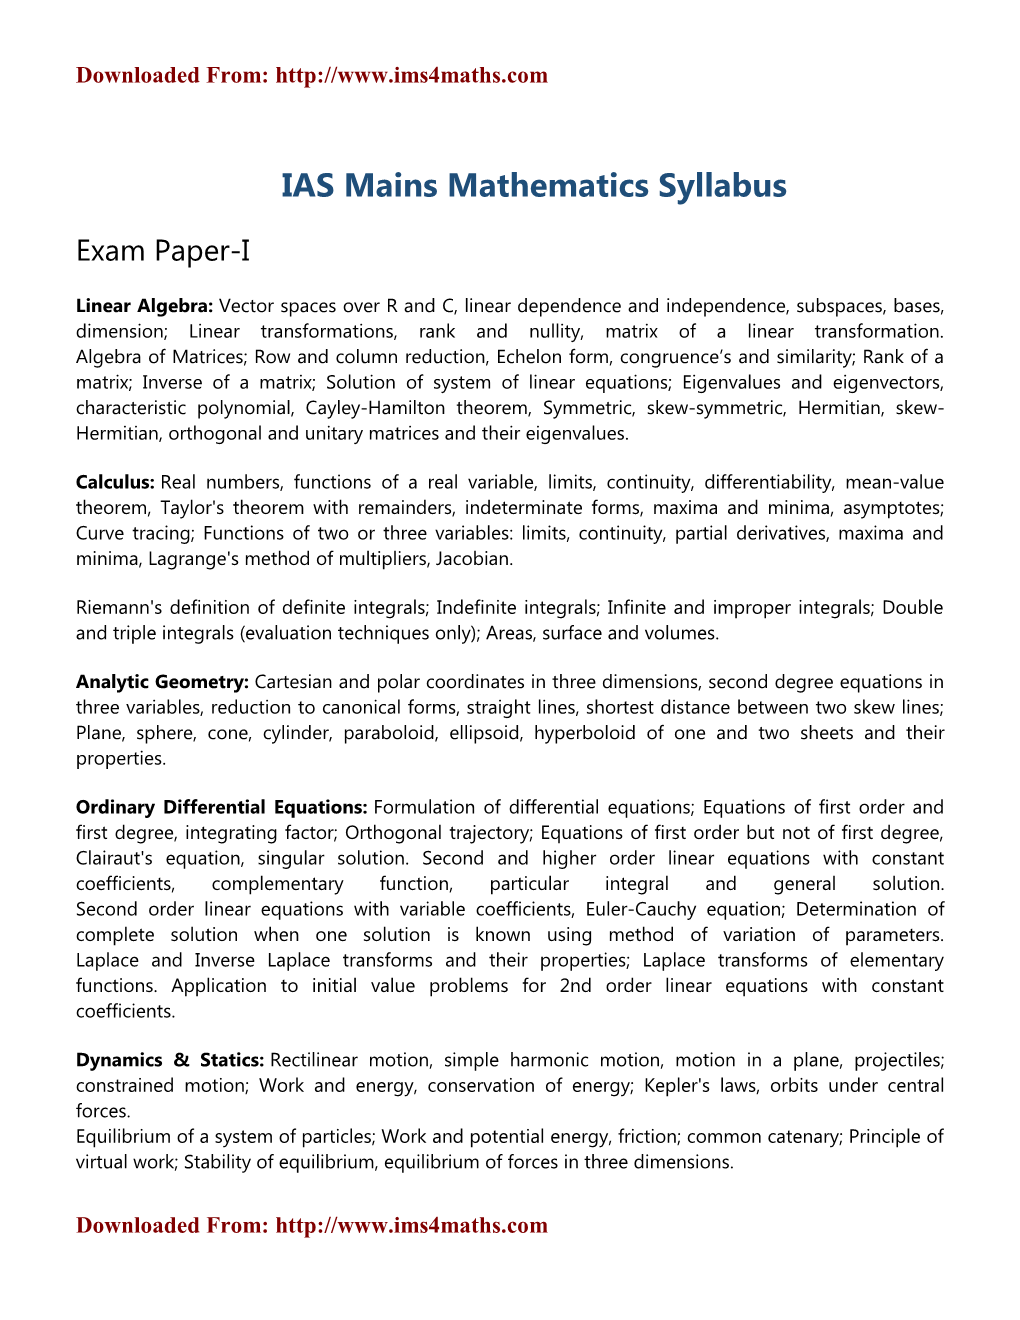 IAS Mains Mathematics Syllabus